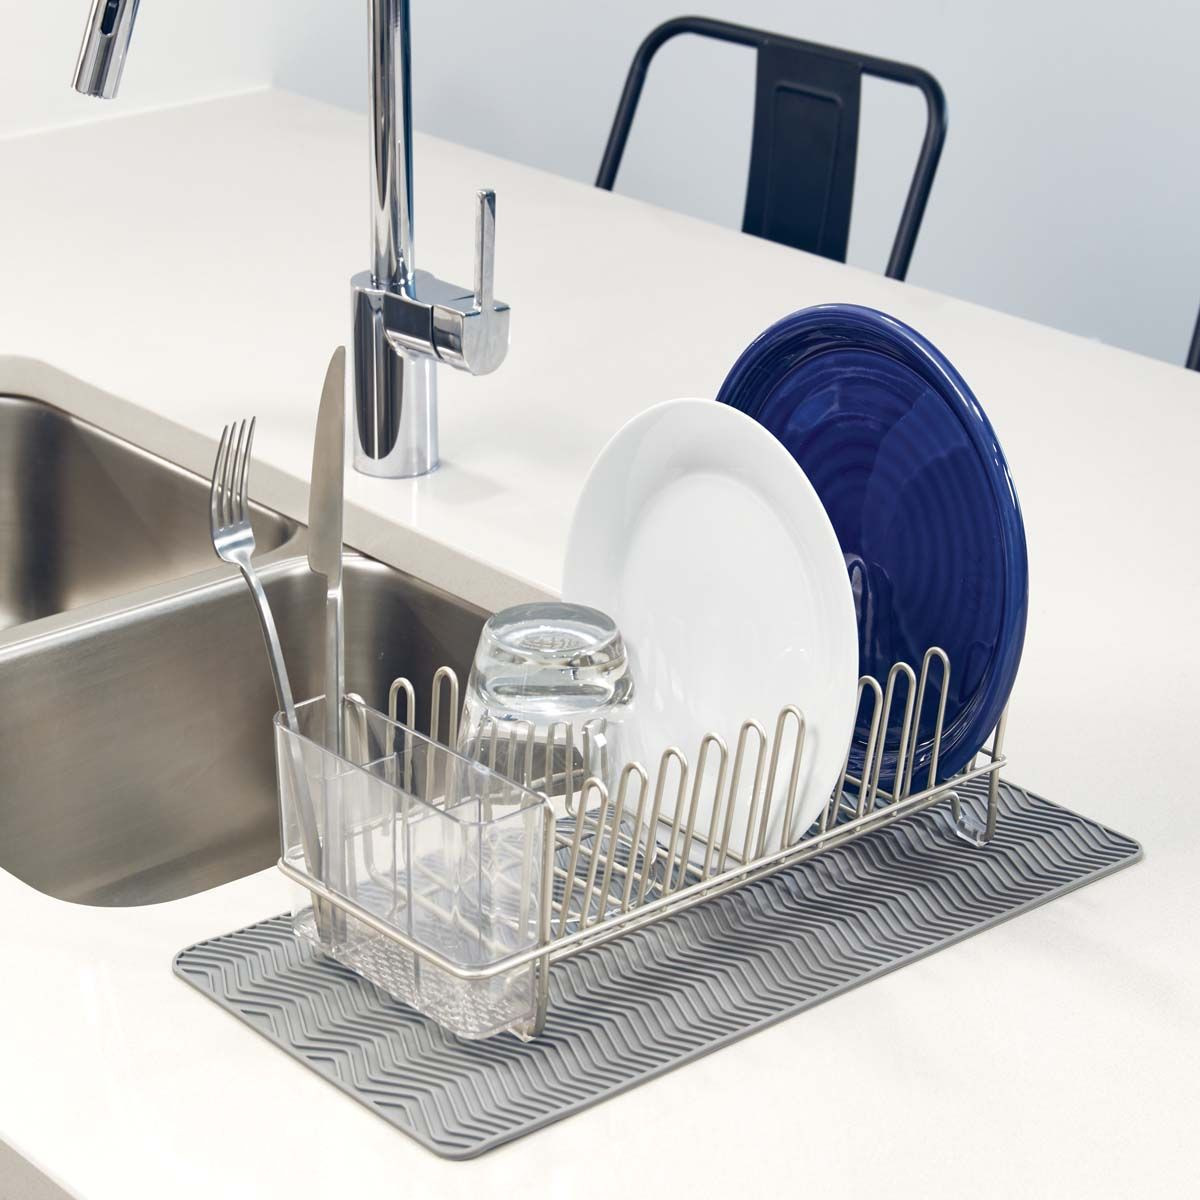 Égouttoir vaisselle compact plastique